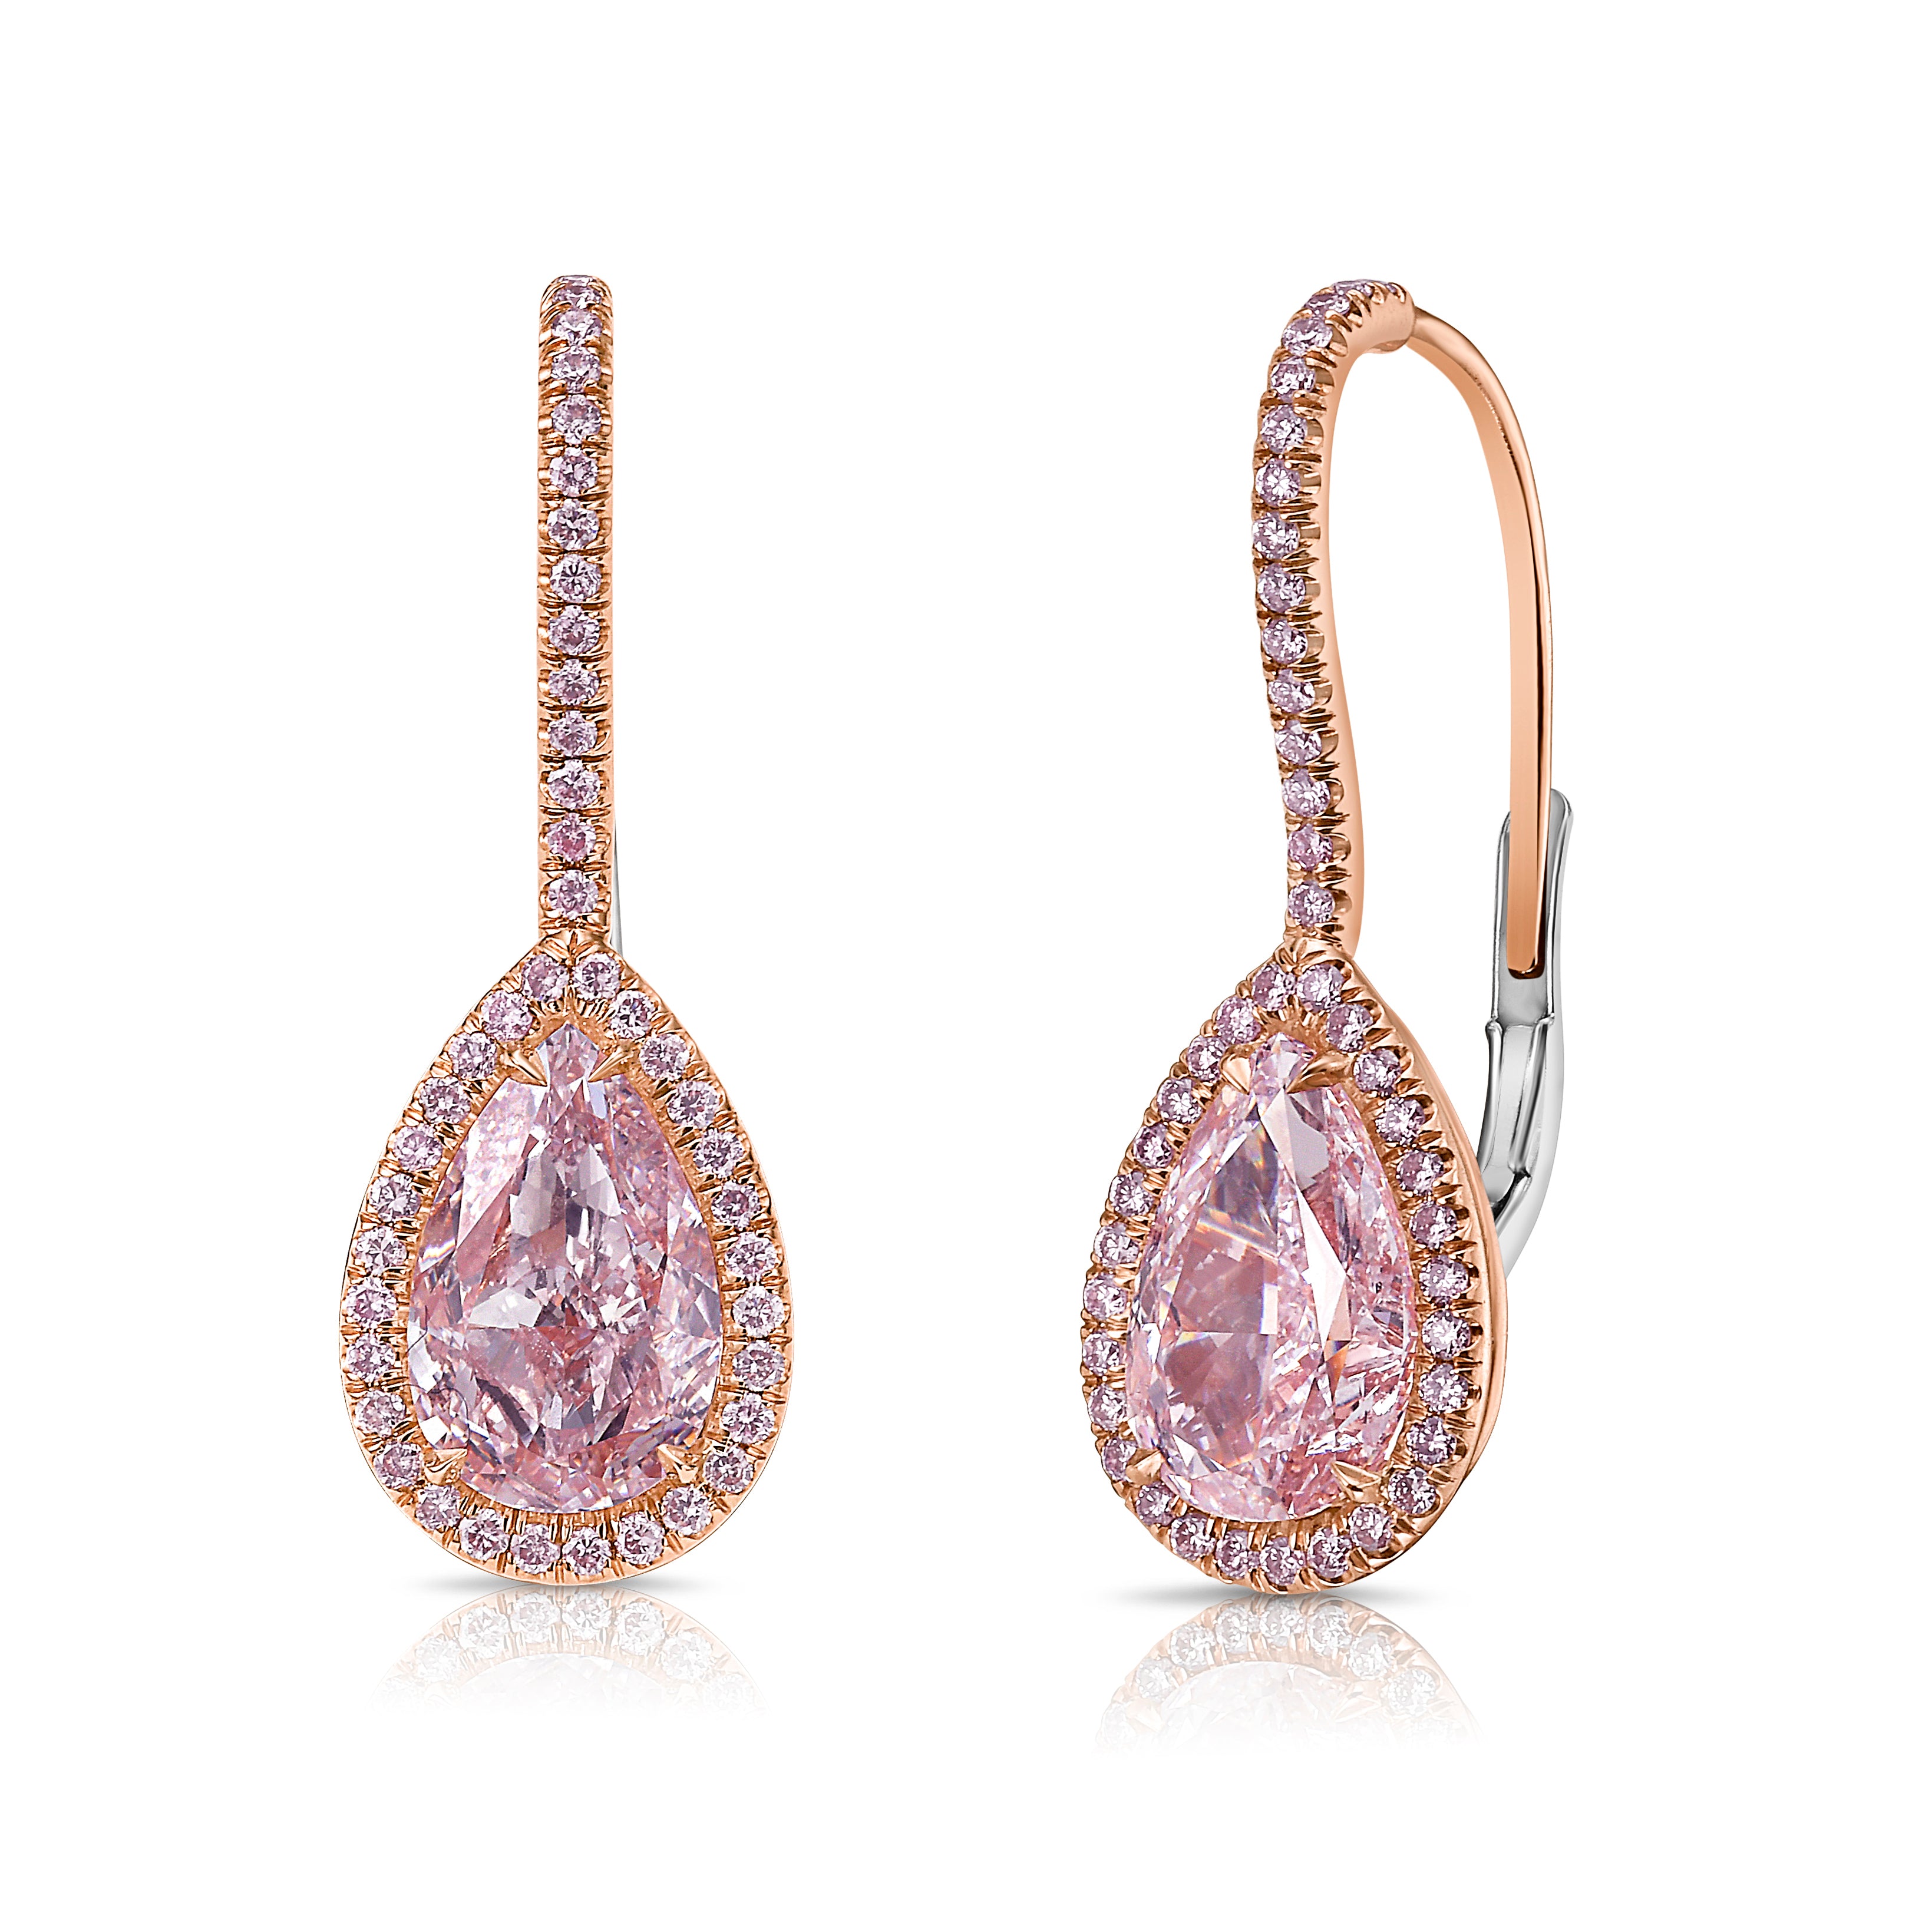 4ct Light Pink Pear Diamond Drop Earrings